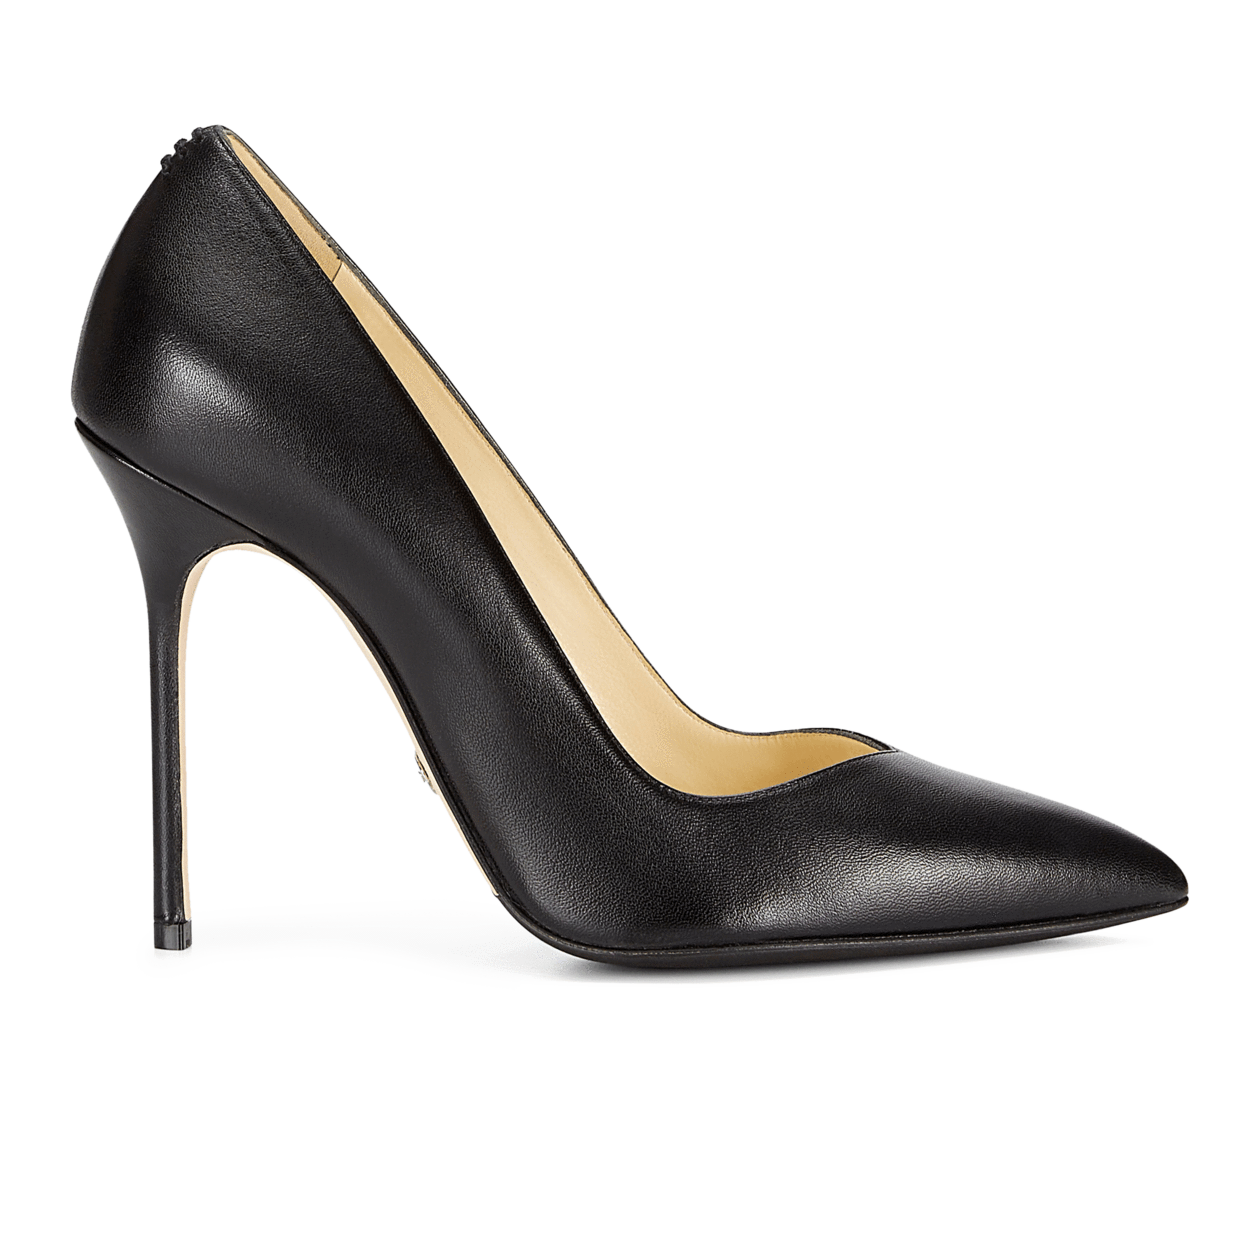 most comfortable brand of heels